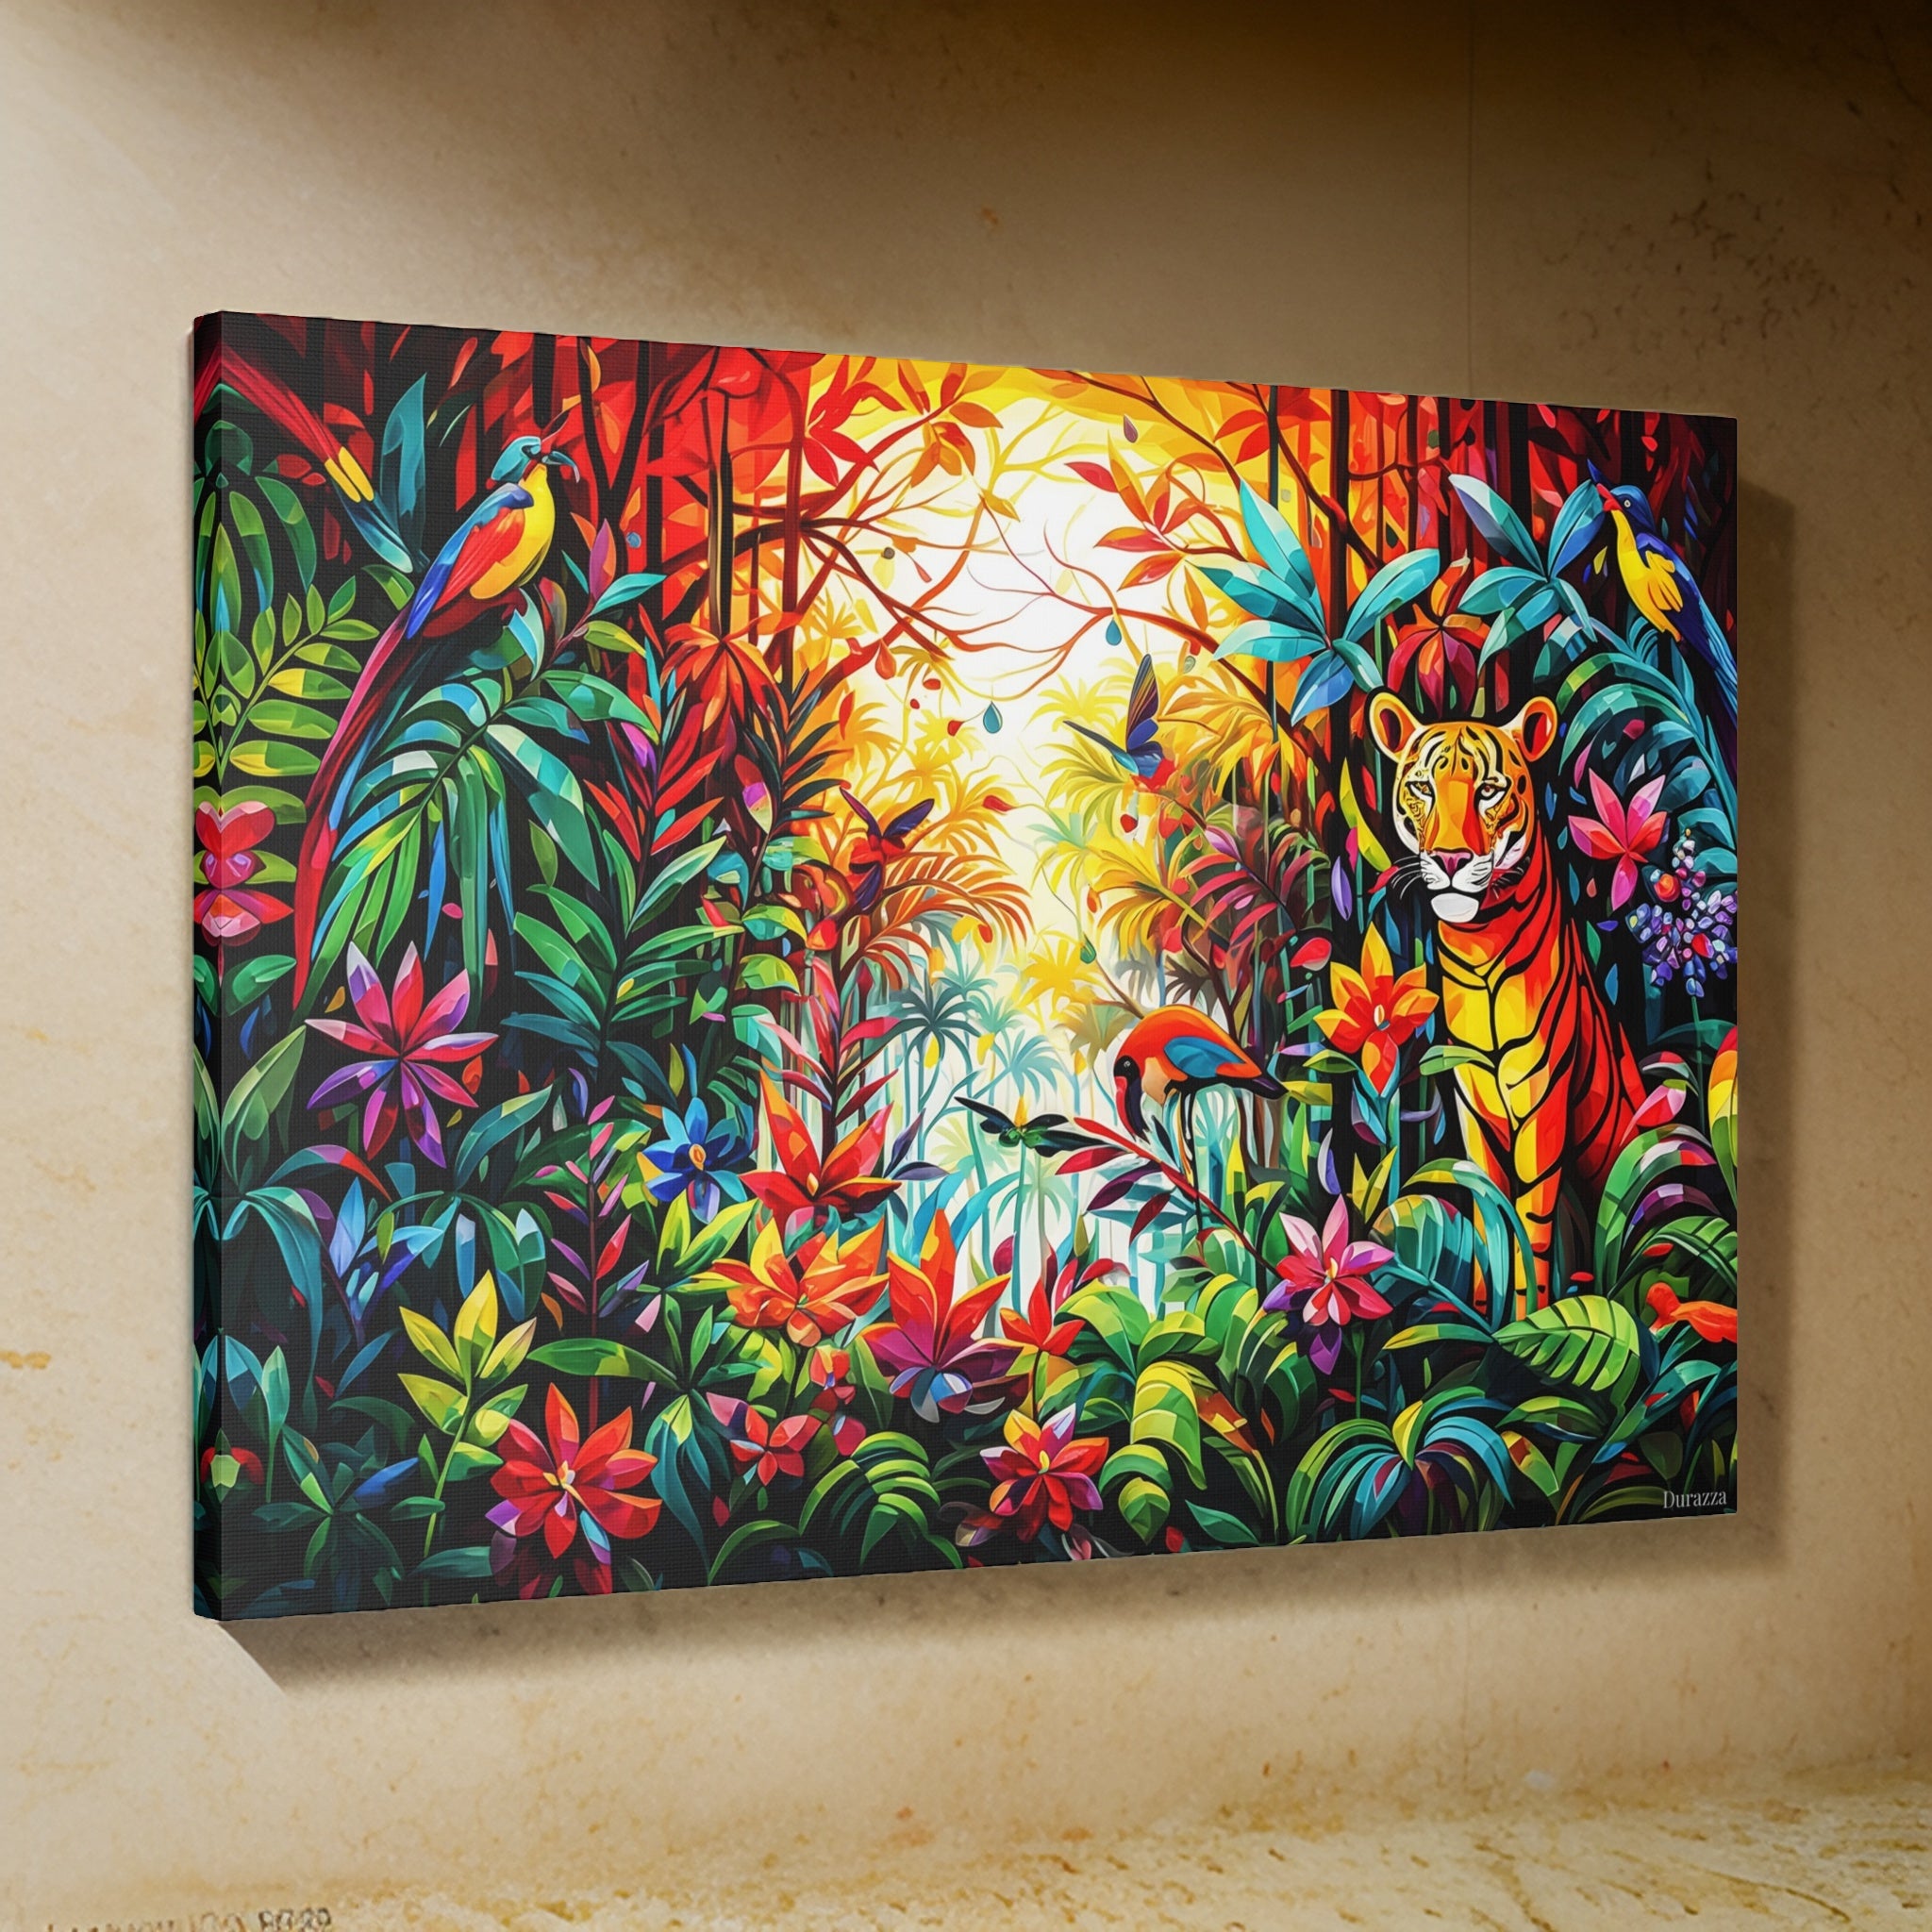 A Tiger's Tale Wall Art: Explore a Vibrant Jungle Paradise